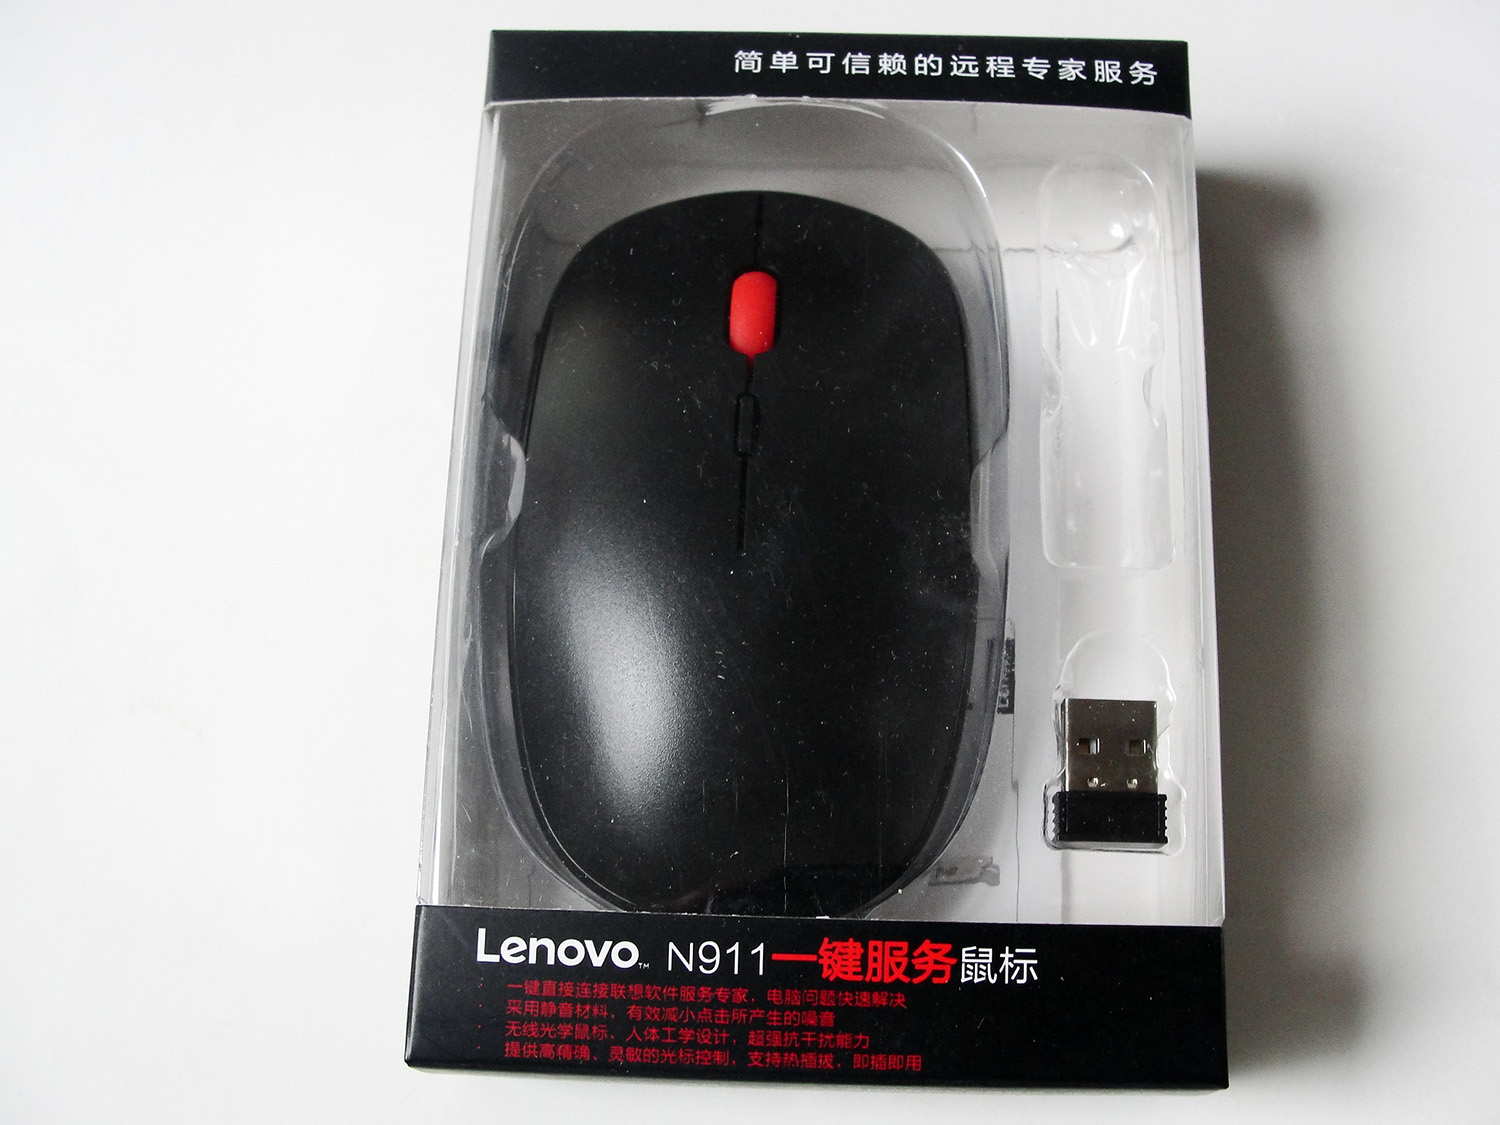 联想N911原装USB无线光学鼠标_1